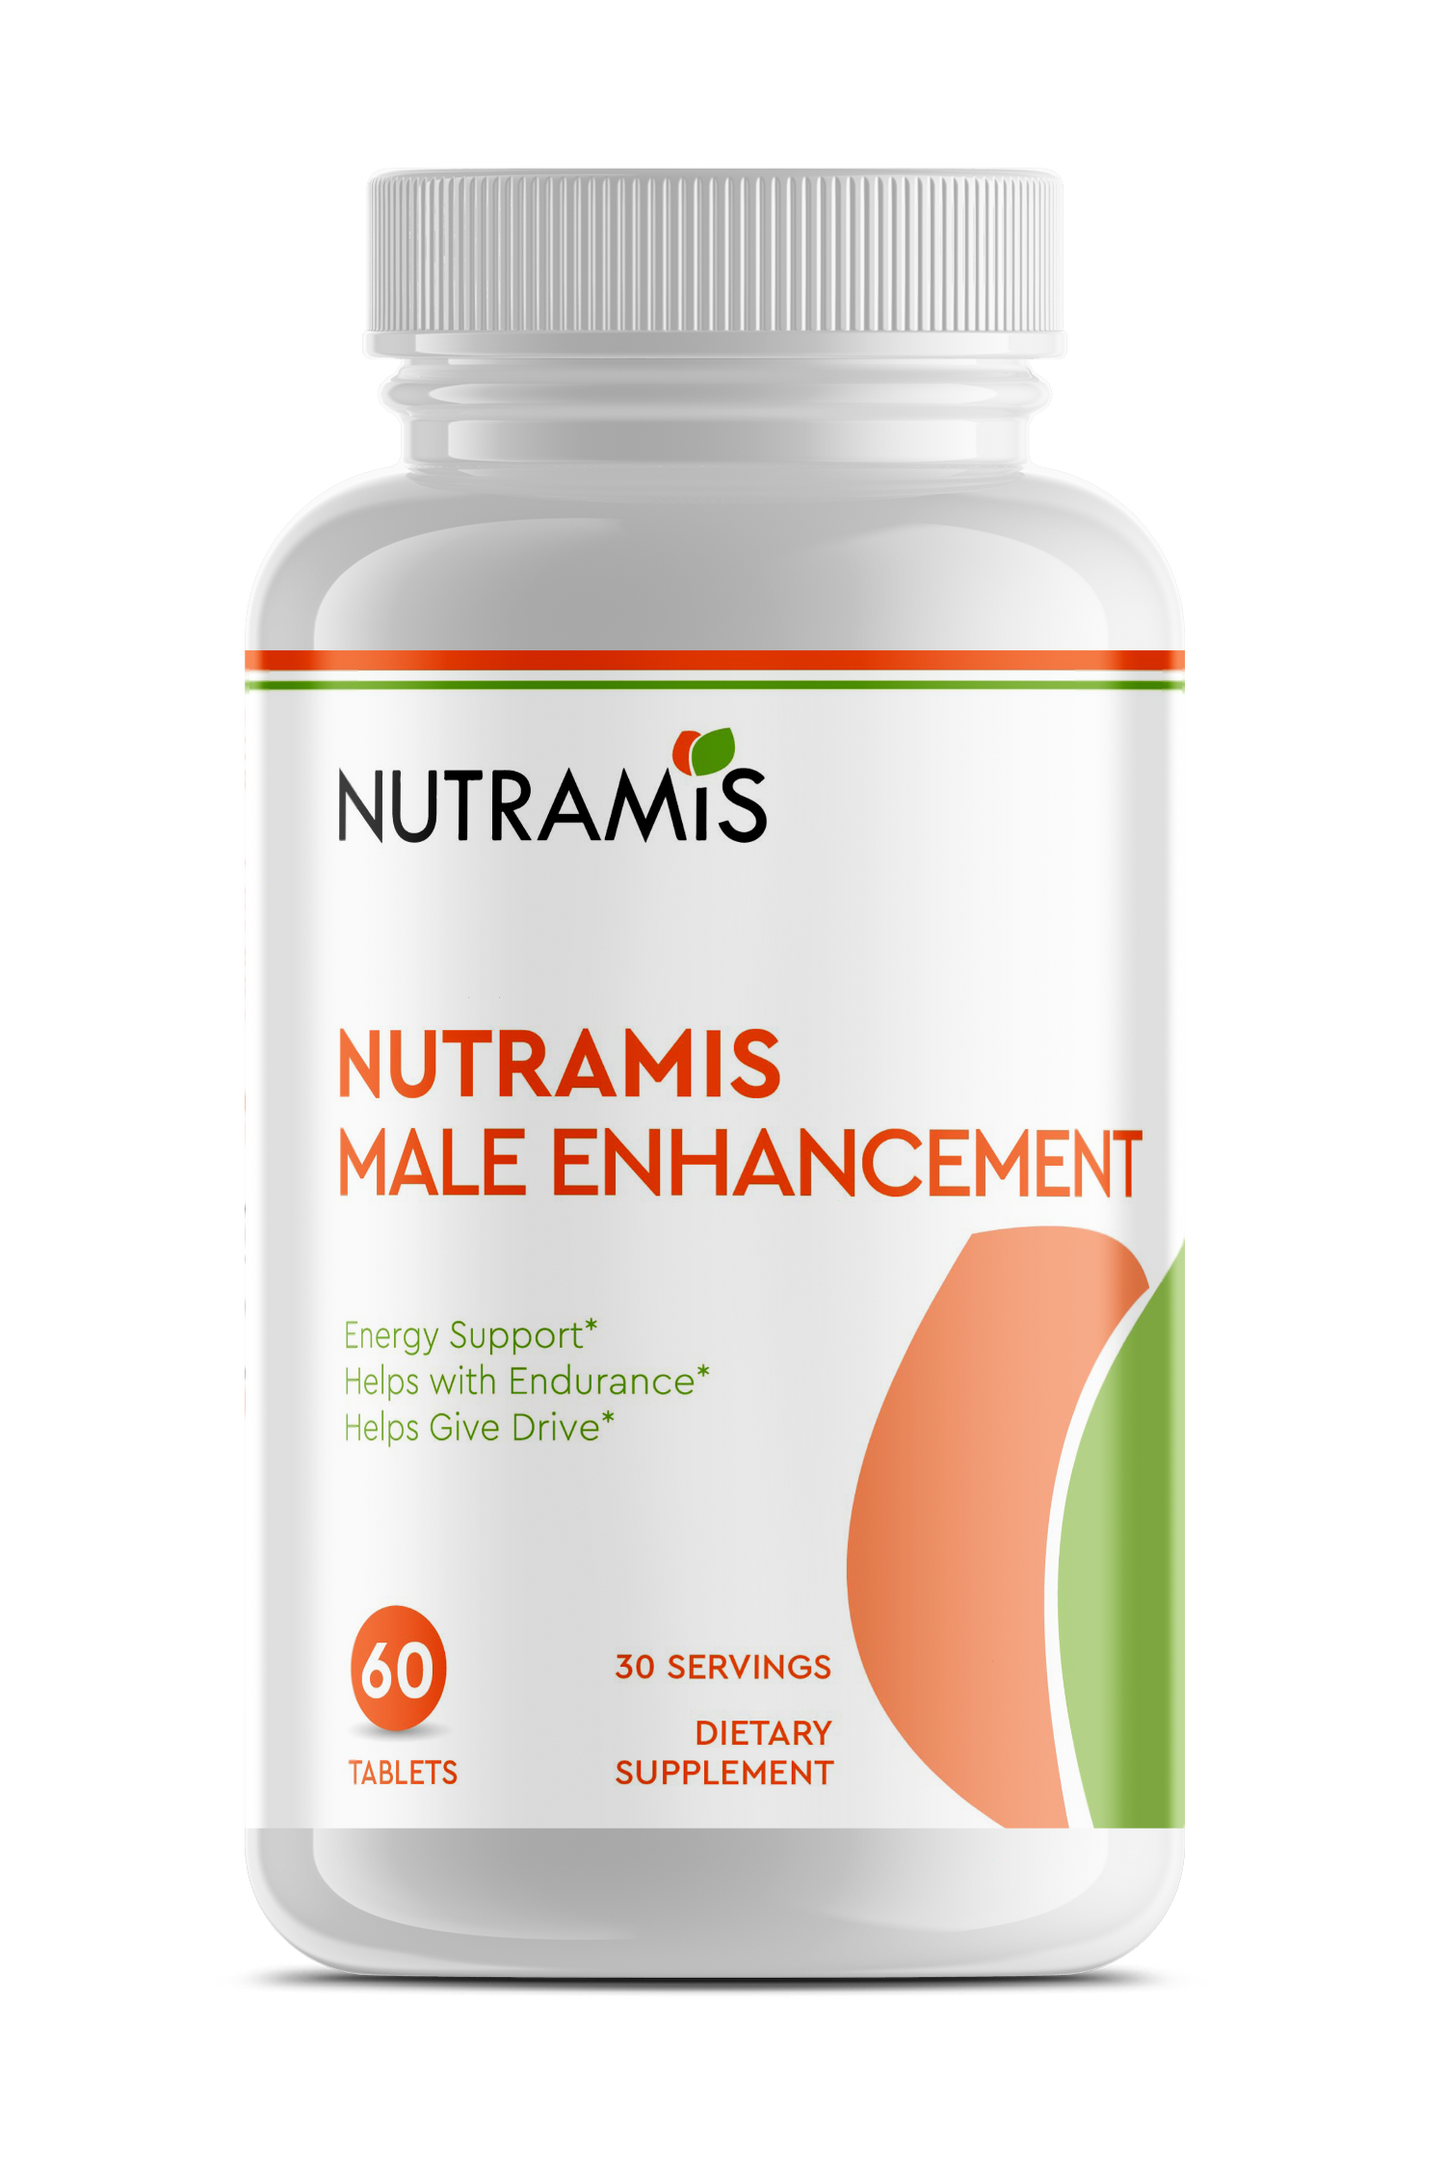 NUTRAMIS Male Enhancement